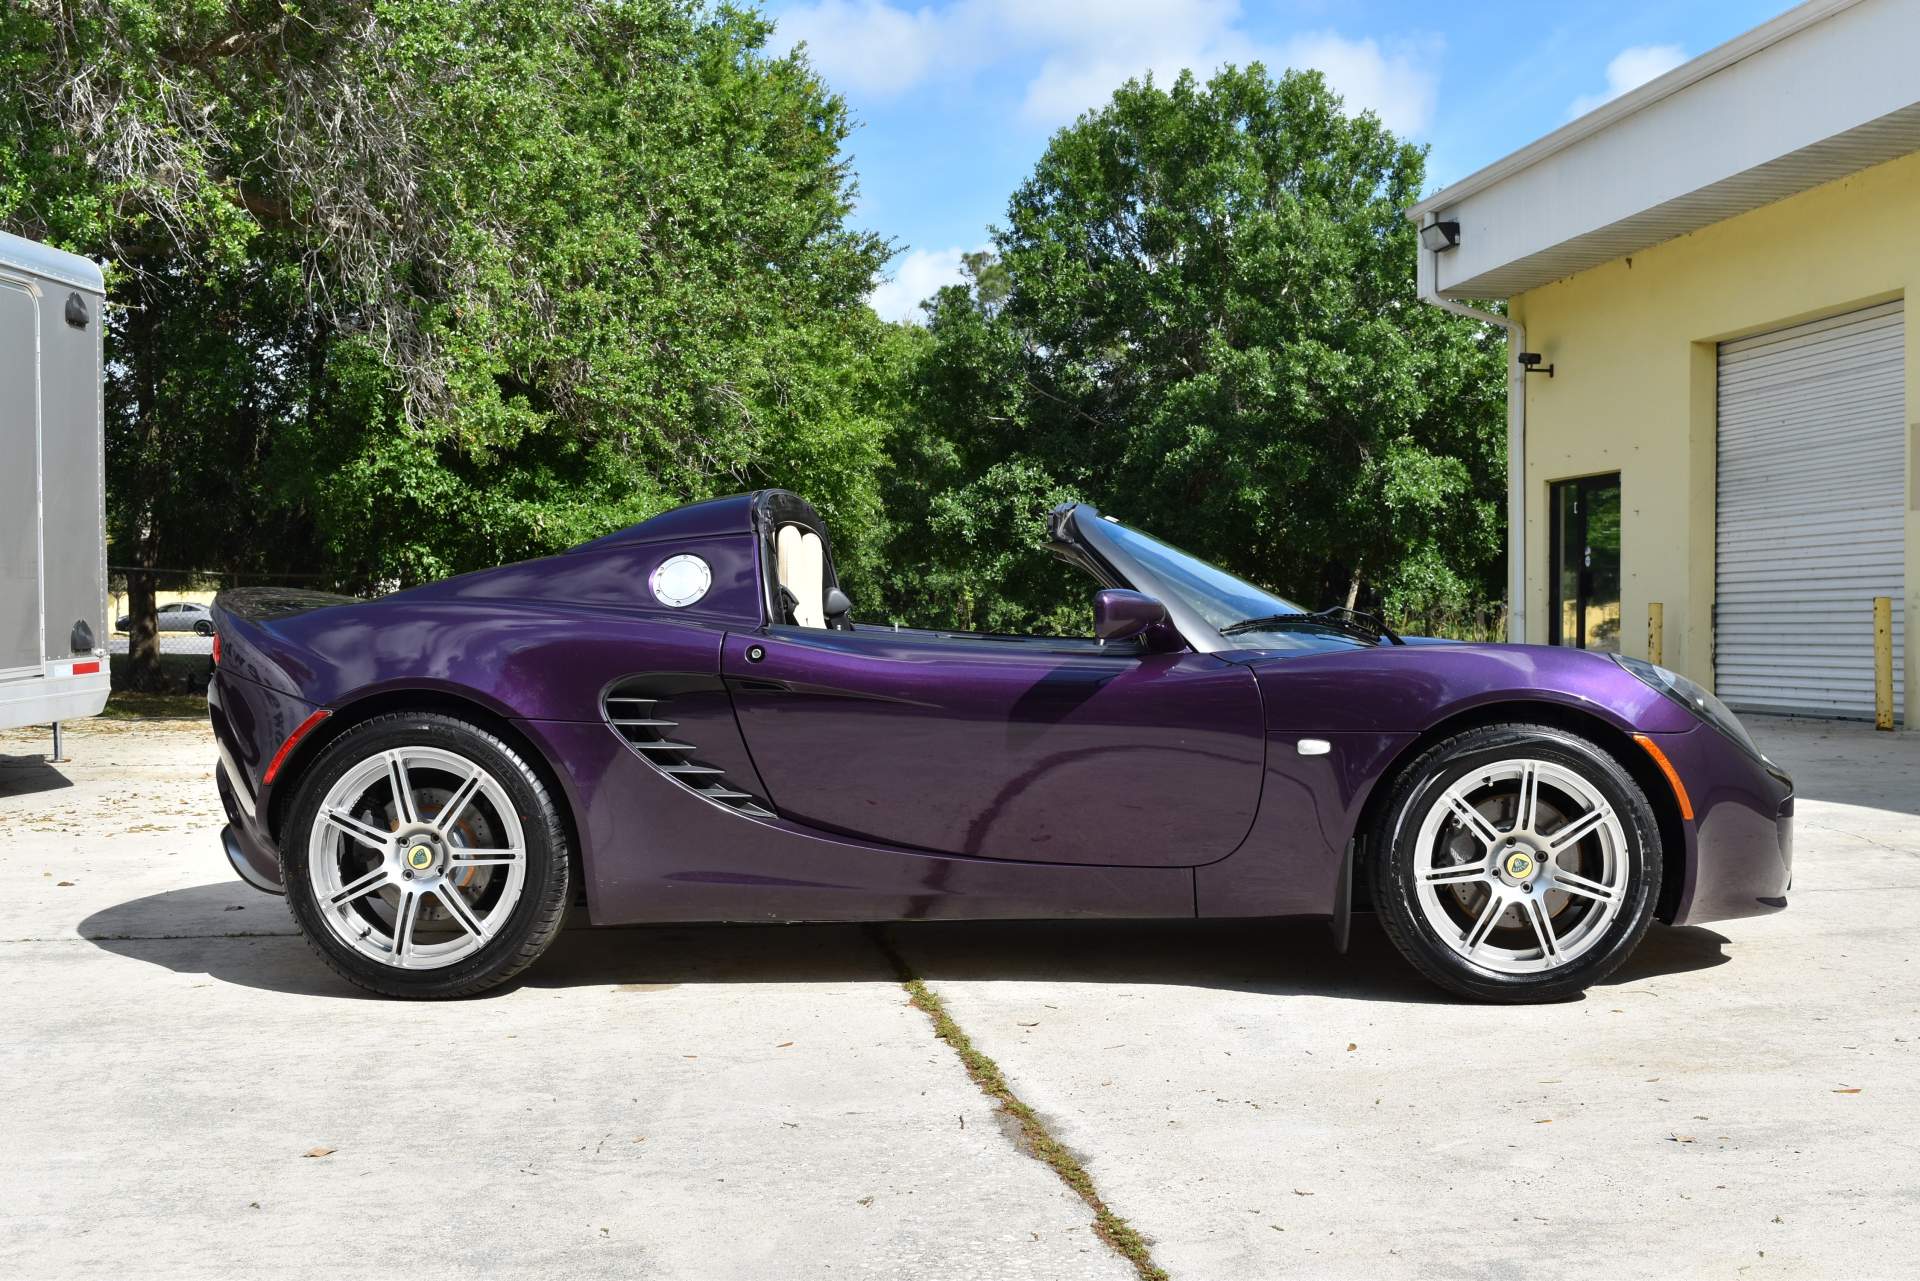 2006 Lotus Elise Purple (25).JPG